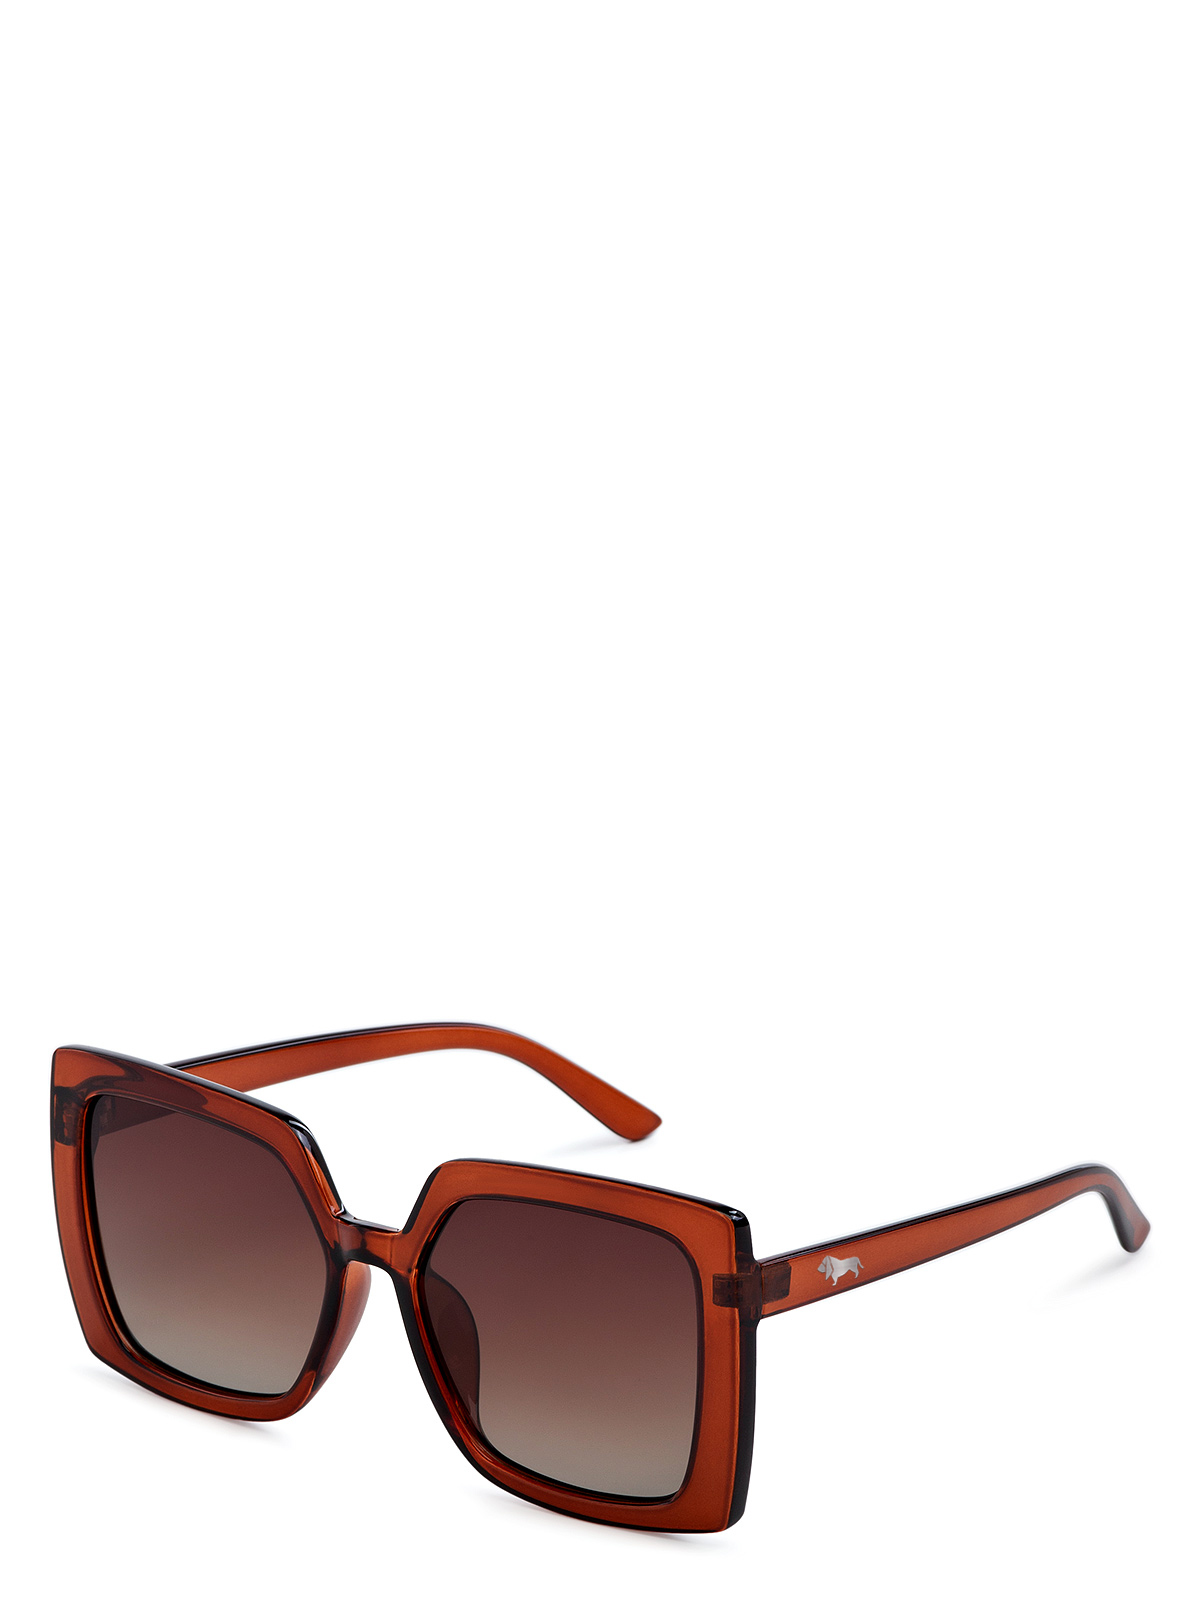 Солнцезащитные очки женские Labbra LB-230002 коричневые